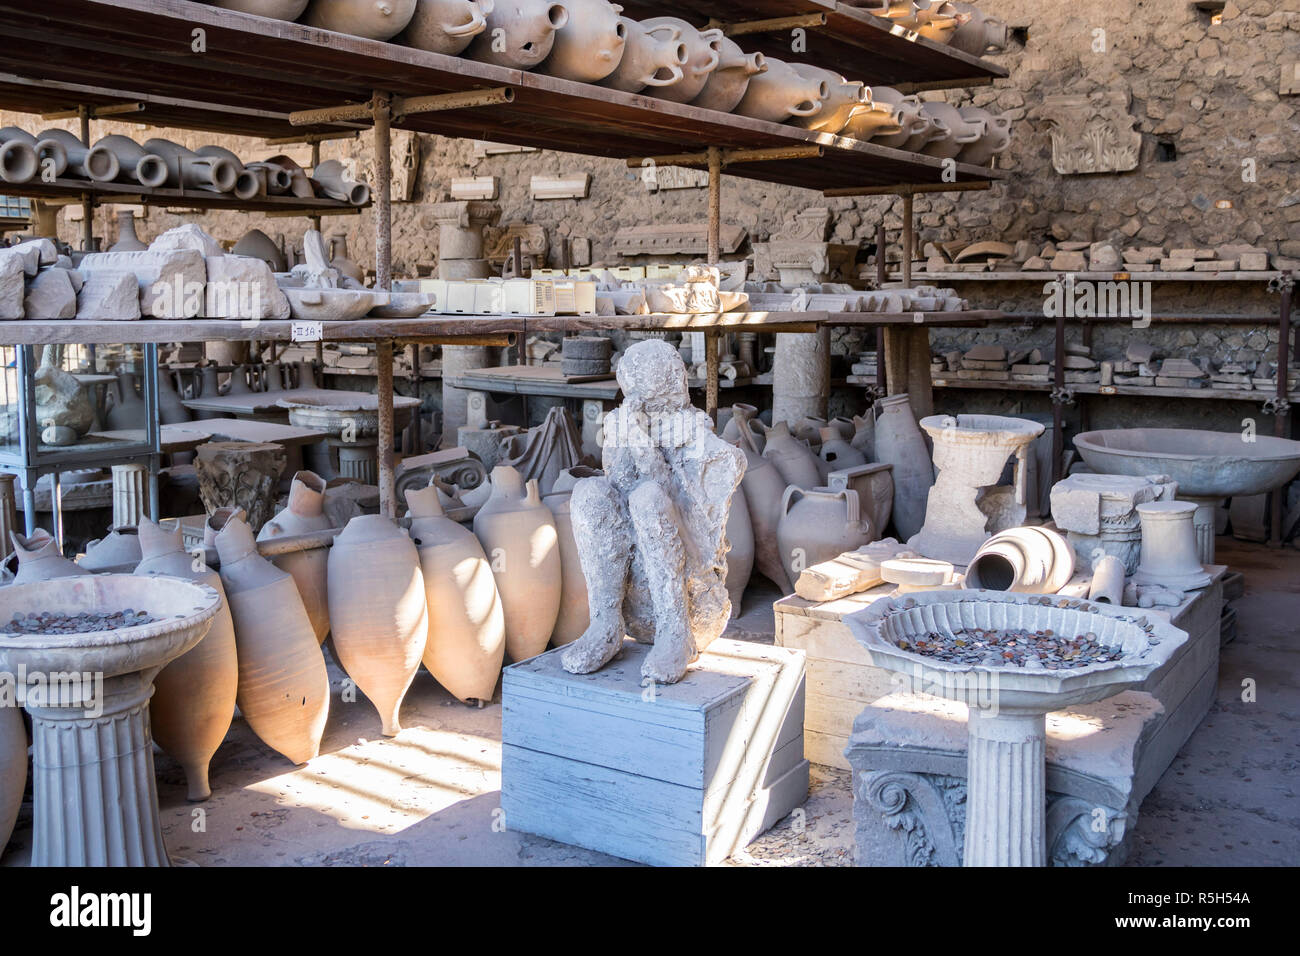 Les cendres d'anciens artefacts homme amphore poterie romaine antique Pompéi, concept à urnes, Pompéi Italie Histoire concept, l'excavation, les fouilles, historique Banque D'Images